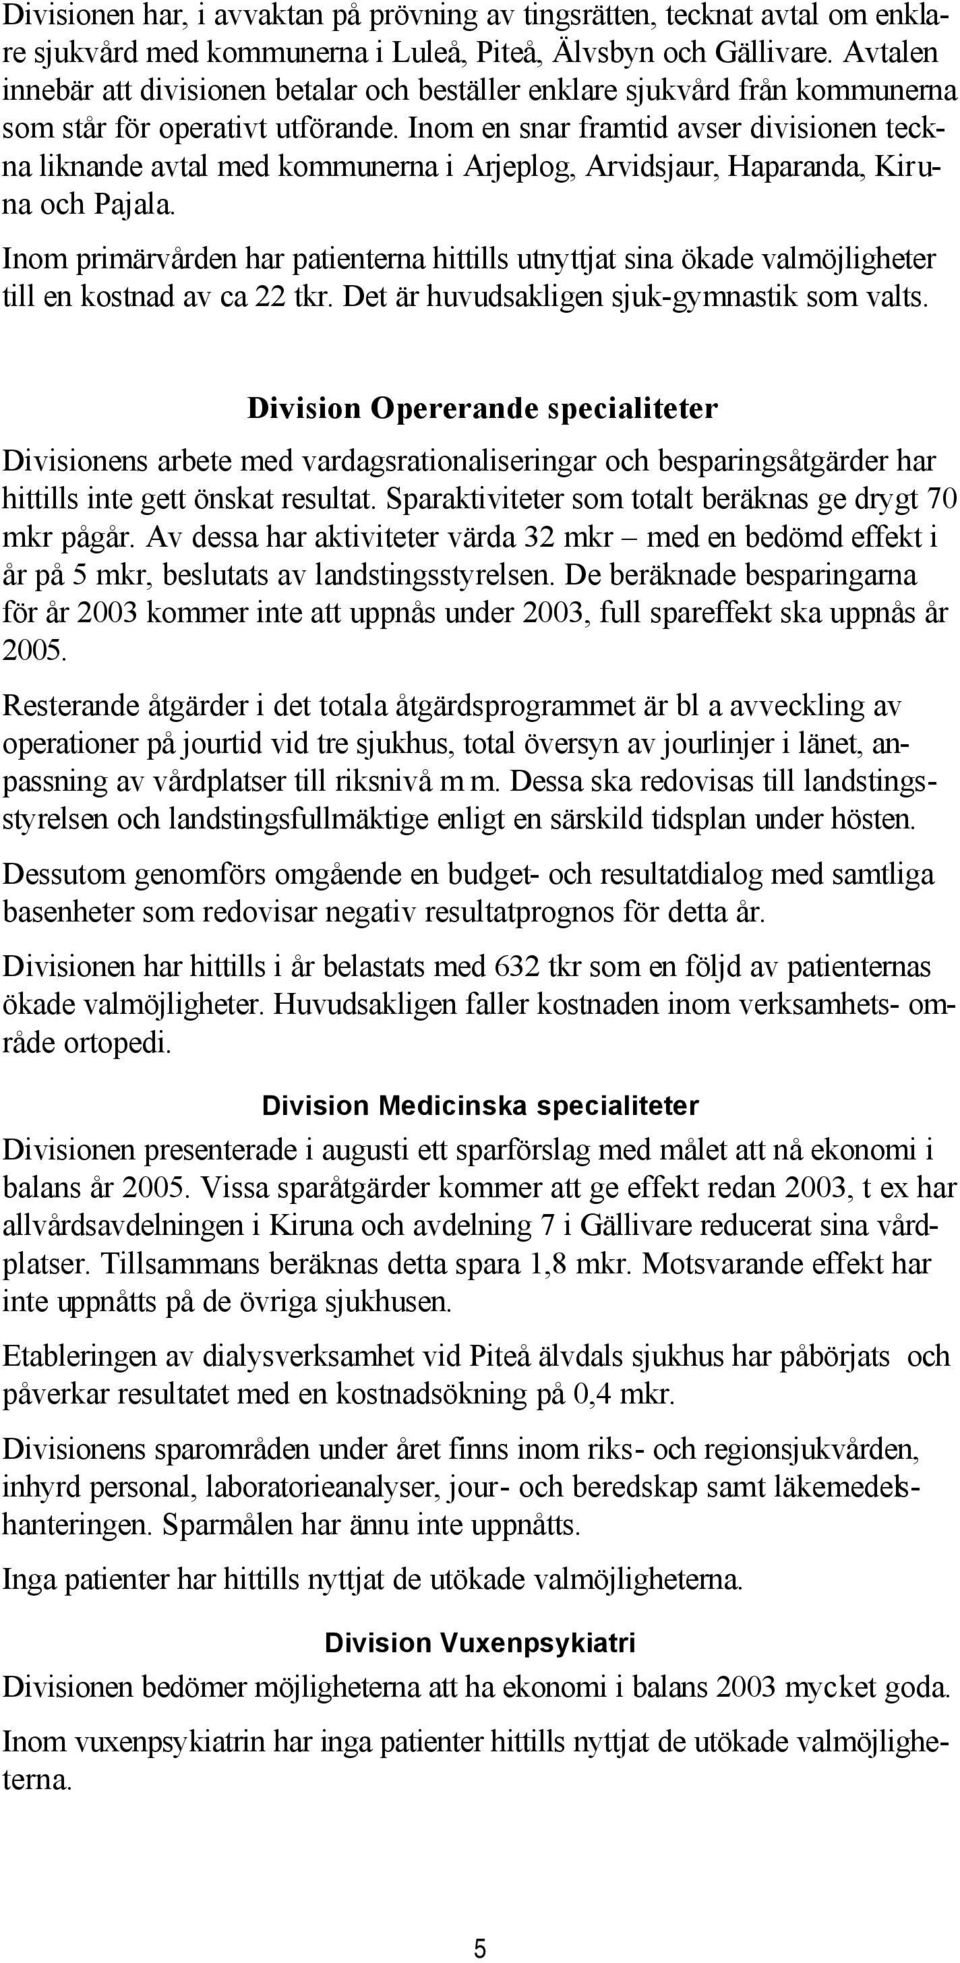 Inom en snar framtid avser divisionen teckna liknande avtal med kommunerna i Arjeplog, Arvidsjaur, Haparanda, Kiruna och Pajala.